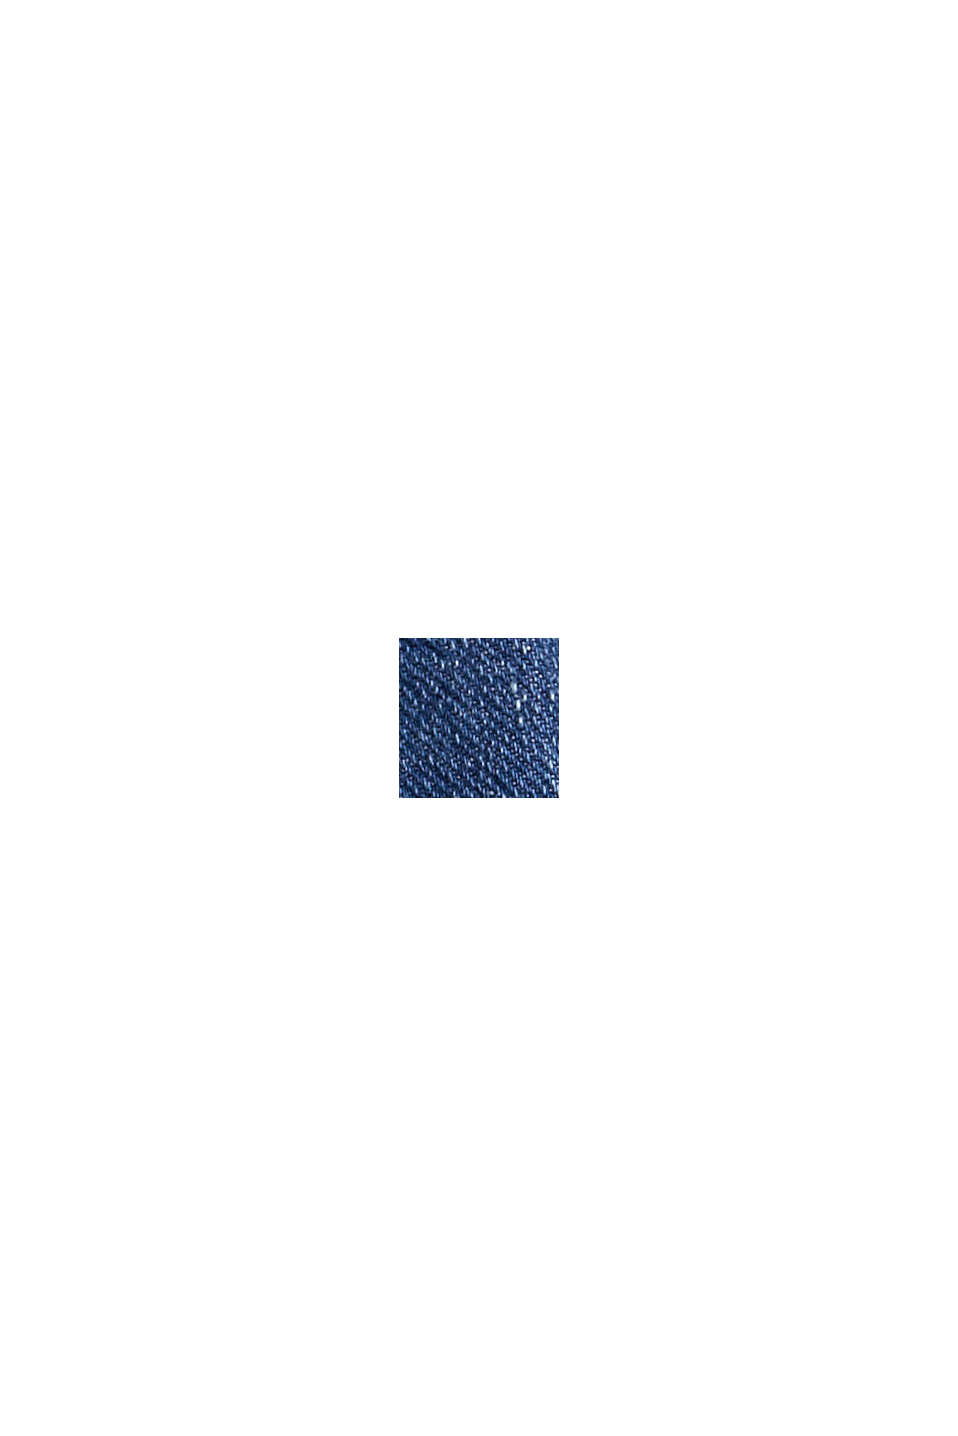 Bootcut-Jeans mit aufgesetzten Taschen, BLUE MEDIUM WASHED, swatch